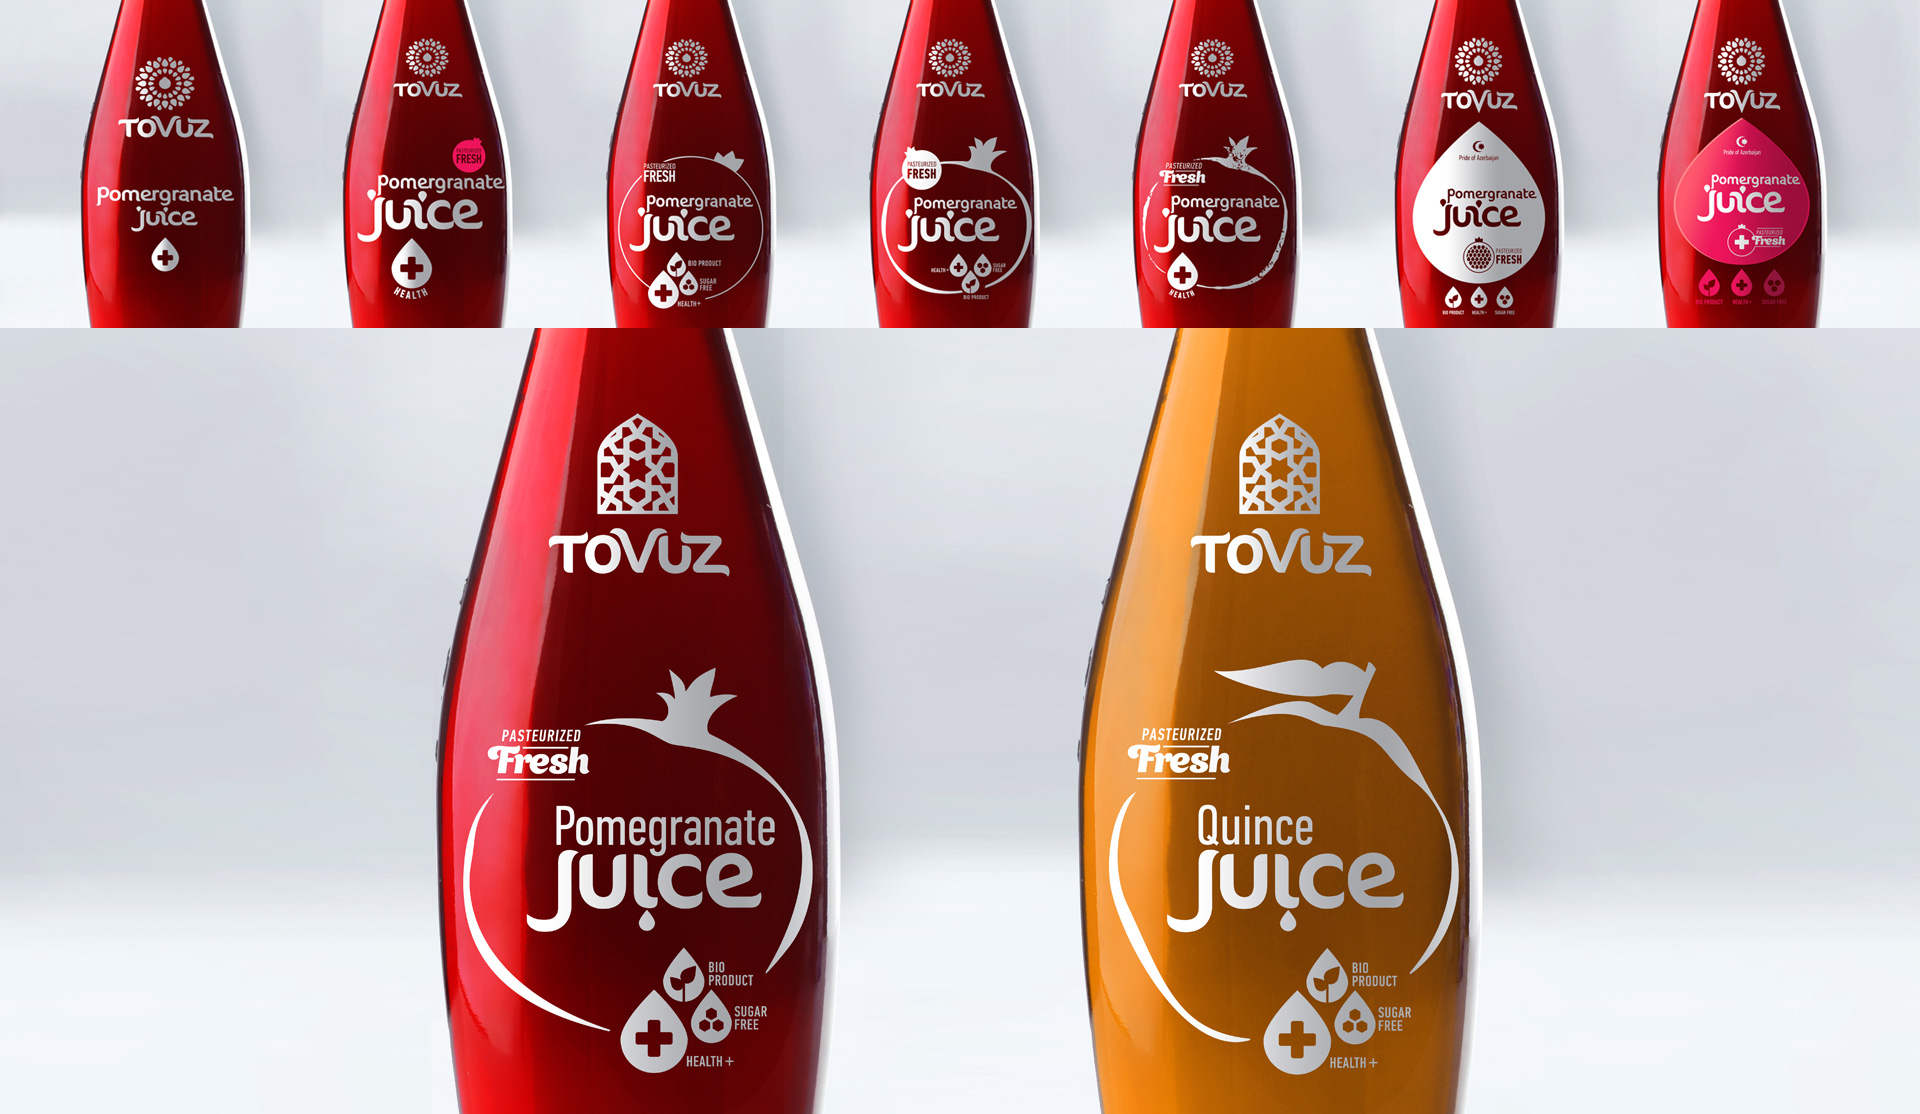 Mockups of a label usage on bottles of juice